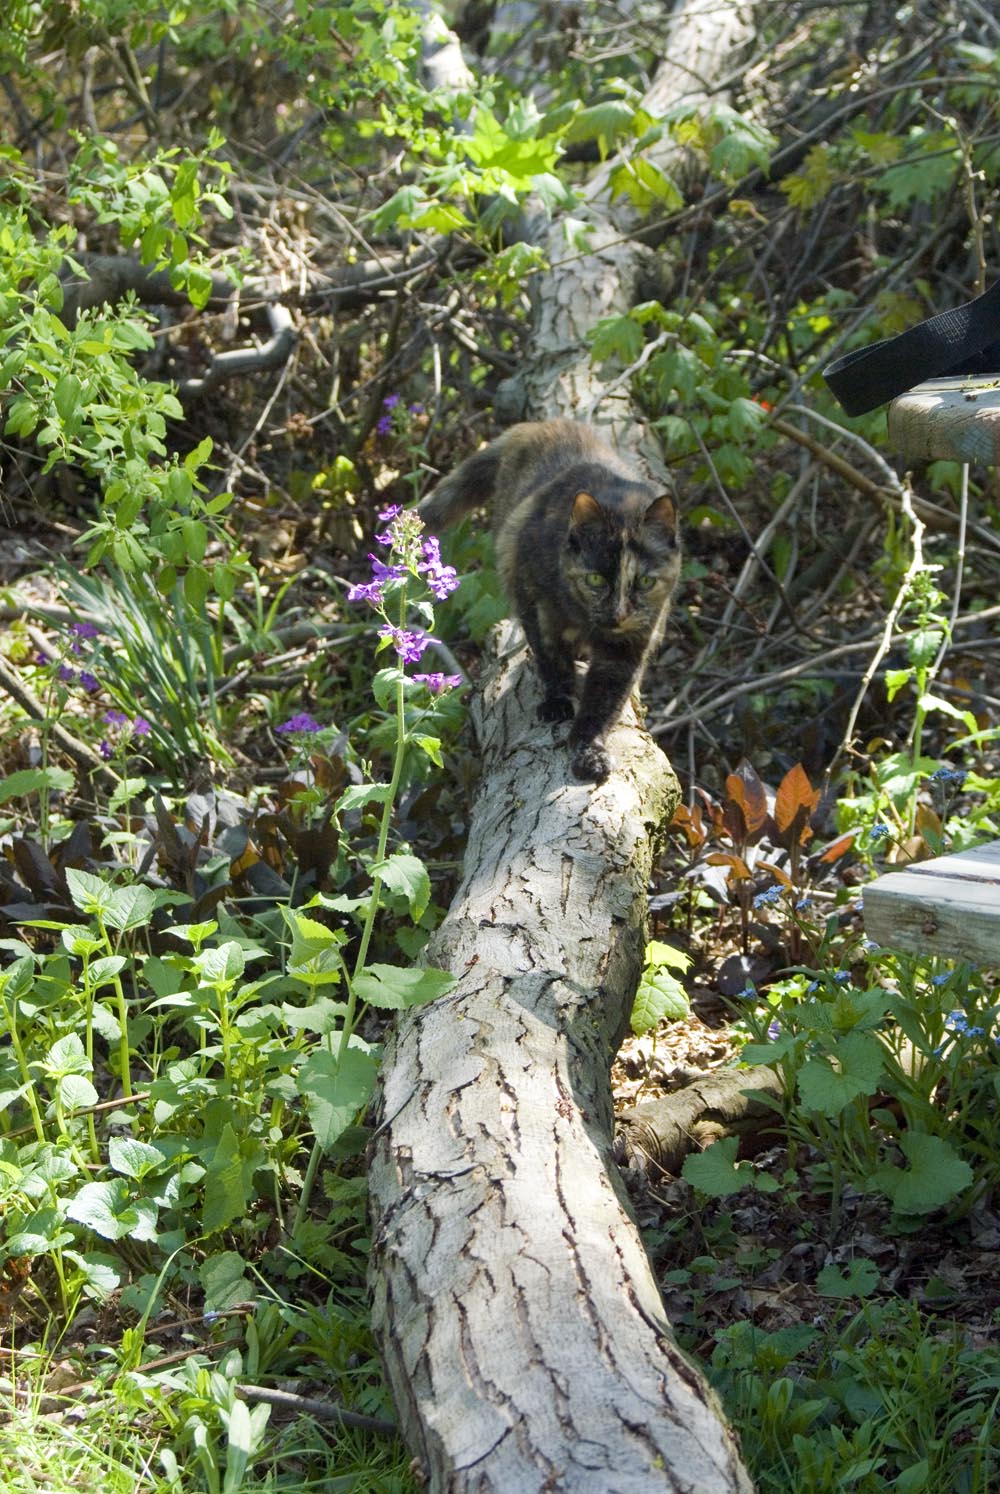 tortoiseshell cat on fallen branch